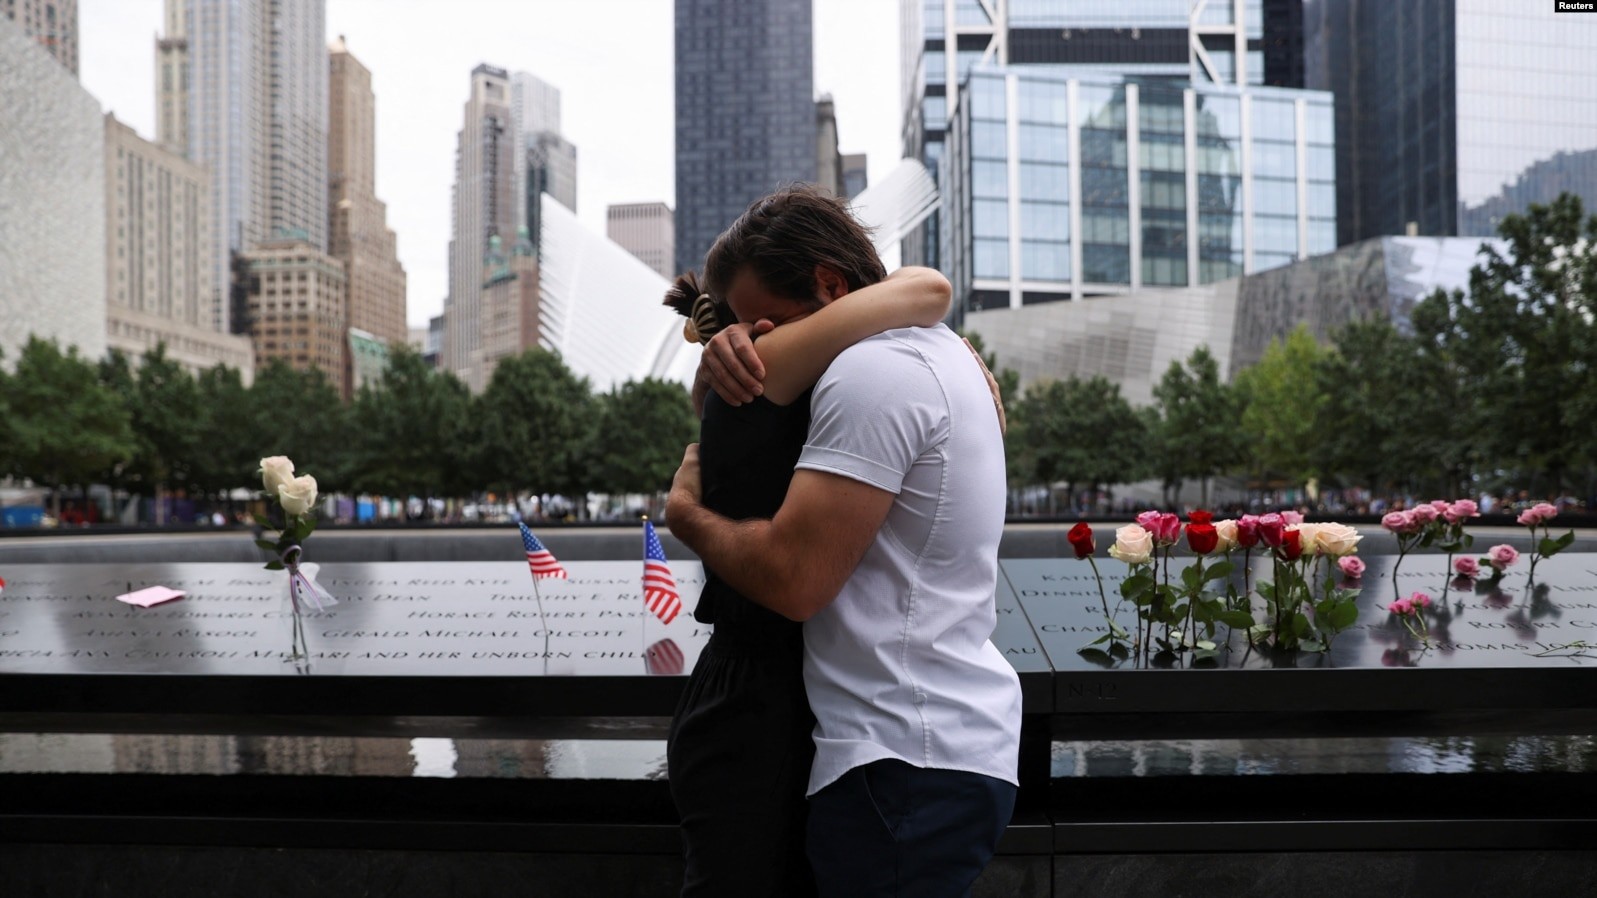 La gente reacciona durante una ceremonia que marca el 21 aniversario de los ataques del 11 de septiembre de 2001 contra el World Trade Center en el 9/11 Memorial and Museum en Manhattan, Nueva York, EEUU, 11 de septiembre de 2022. REUTERS/Amr Alfiky